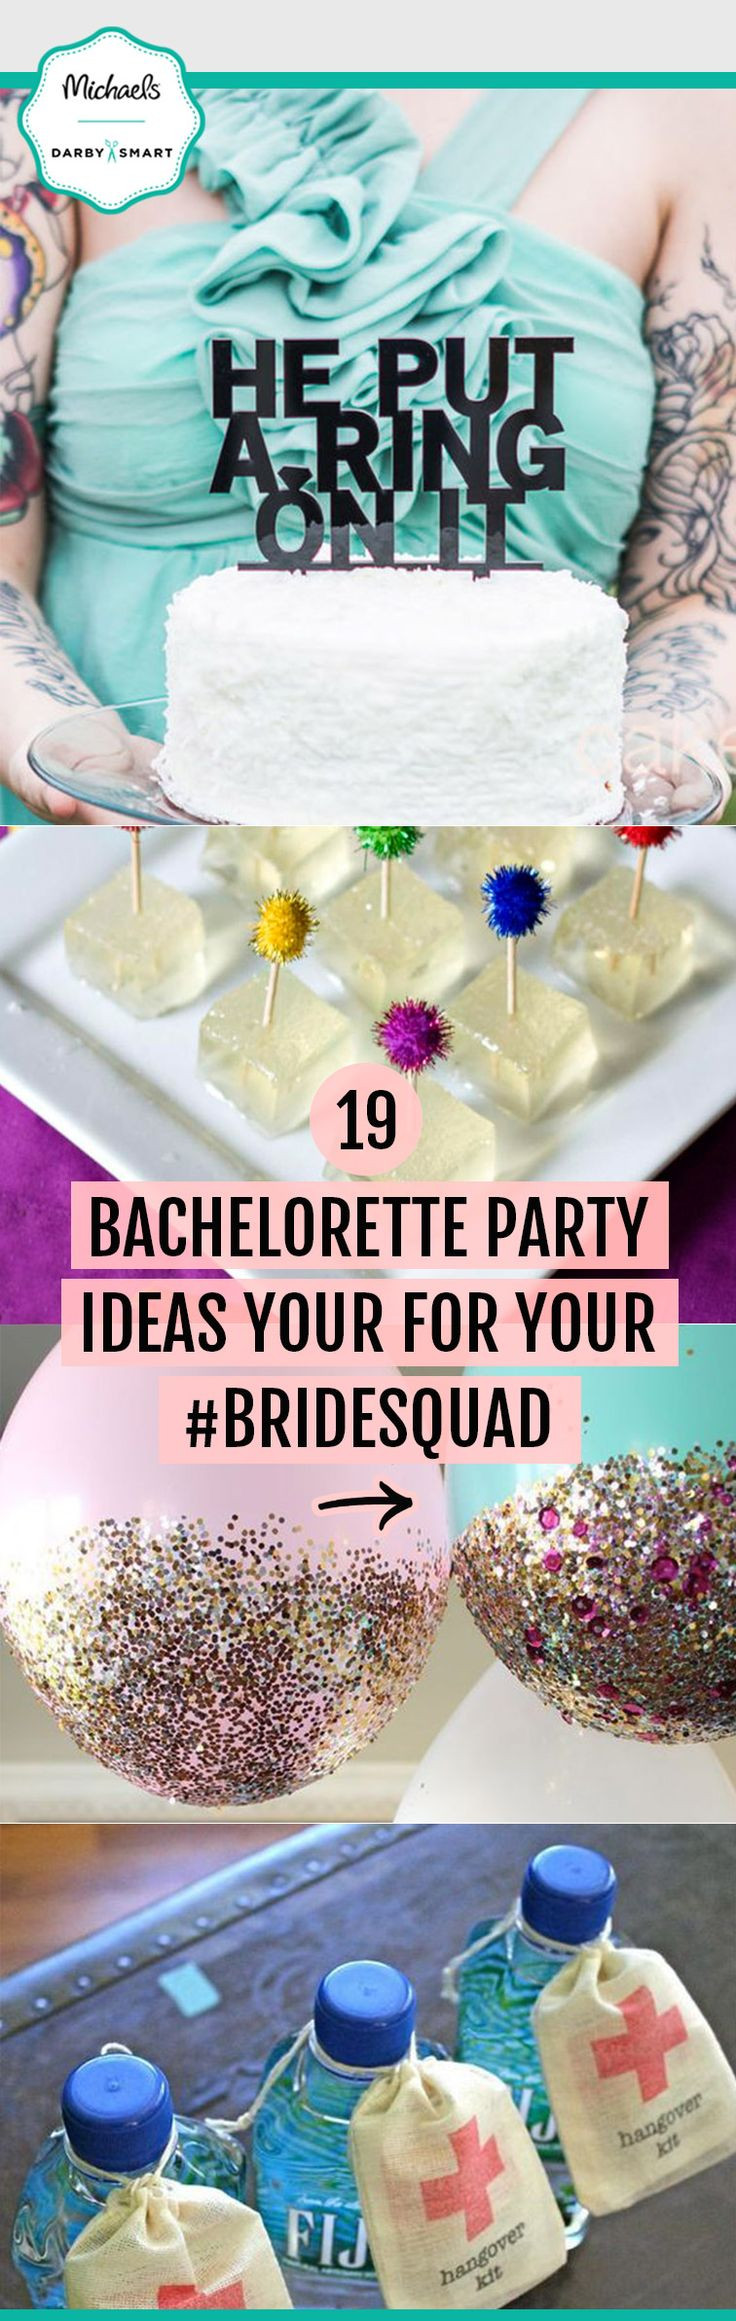 Day Bachelorette Party Ideas
 1000 Unique Bachelorette Ideas on Pinterest